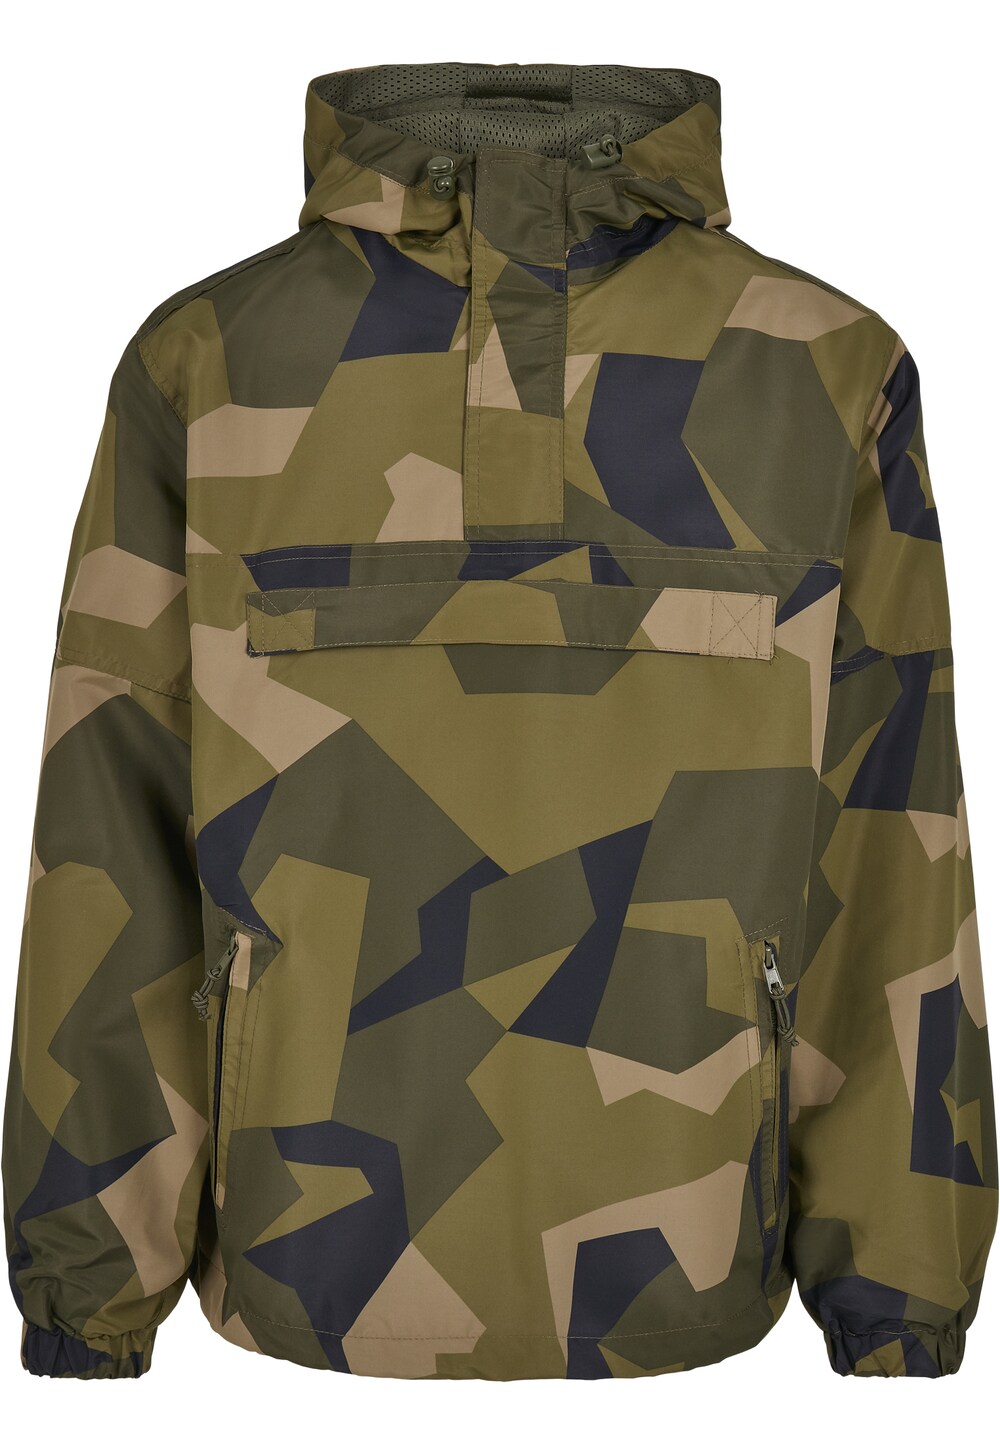 Межсезонная куртка Brandit, хаки/оливковый/светло-зеленый